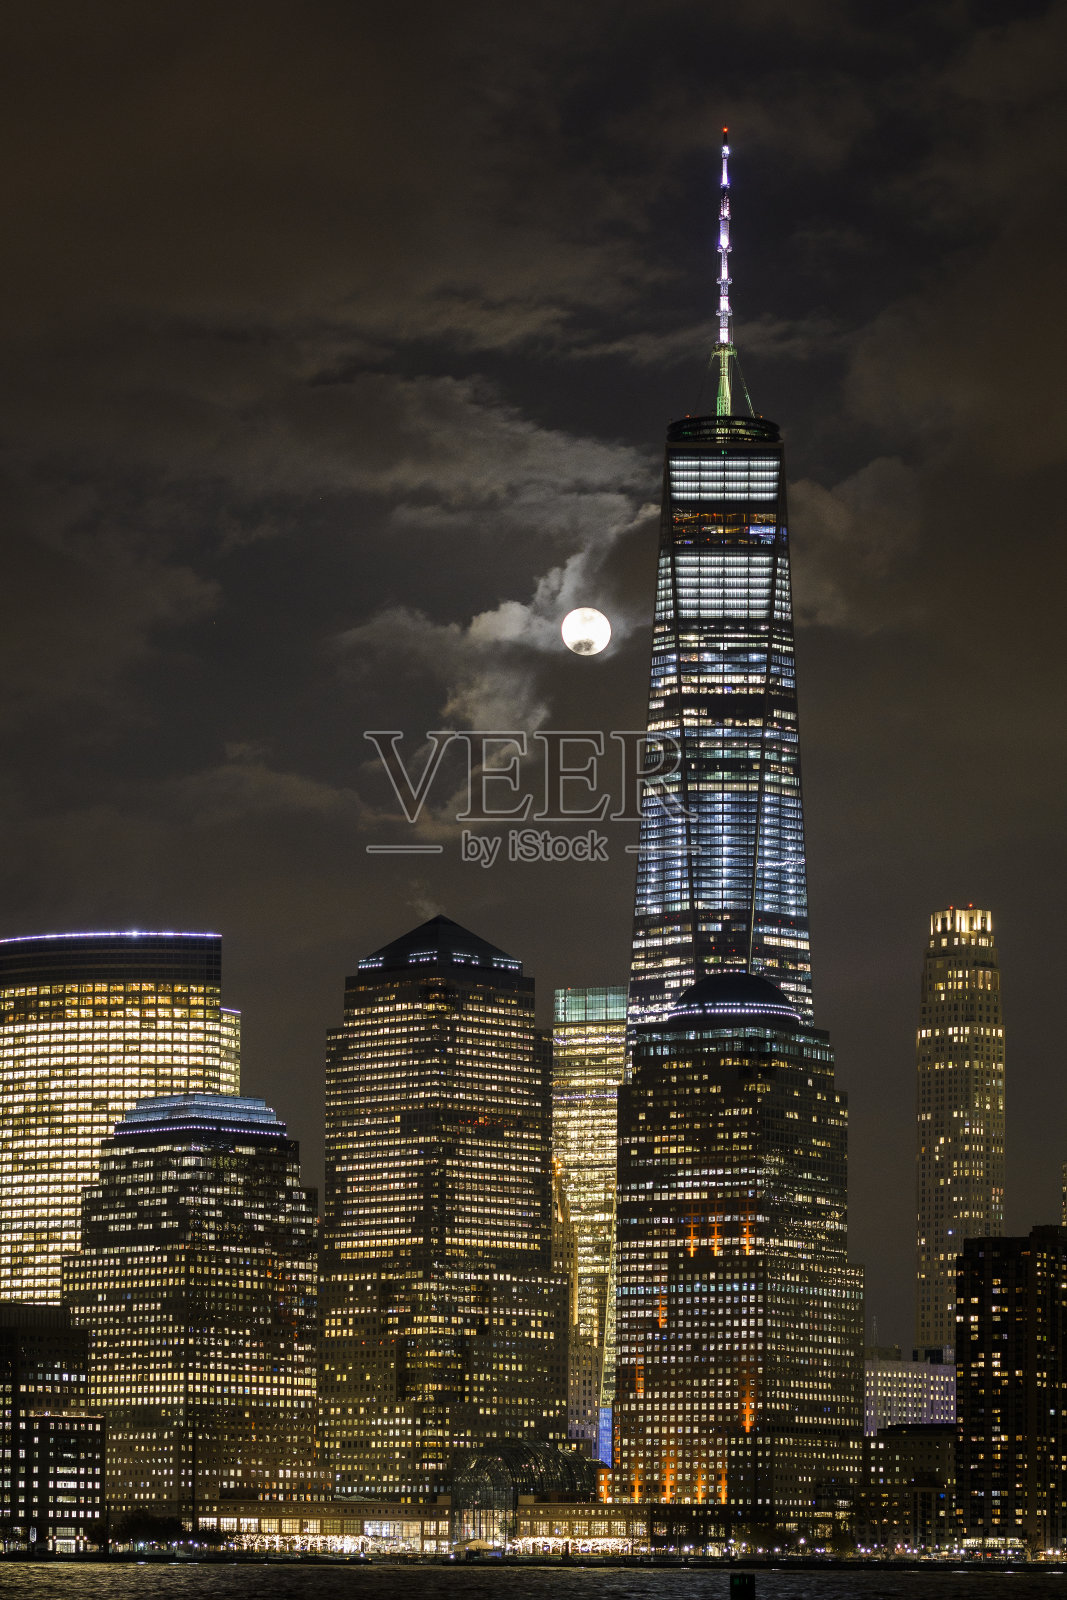 曼哈顿上空的超级月亮照片摄影图片